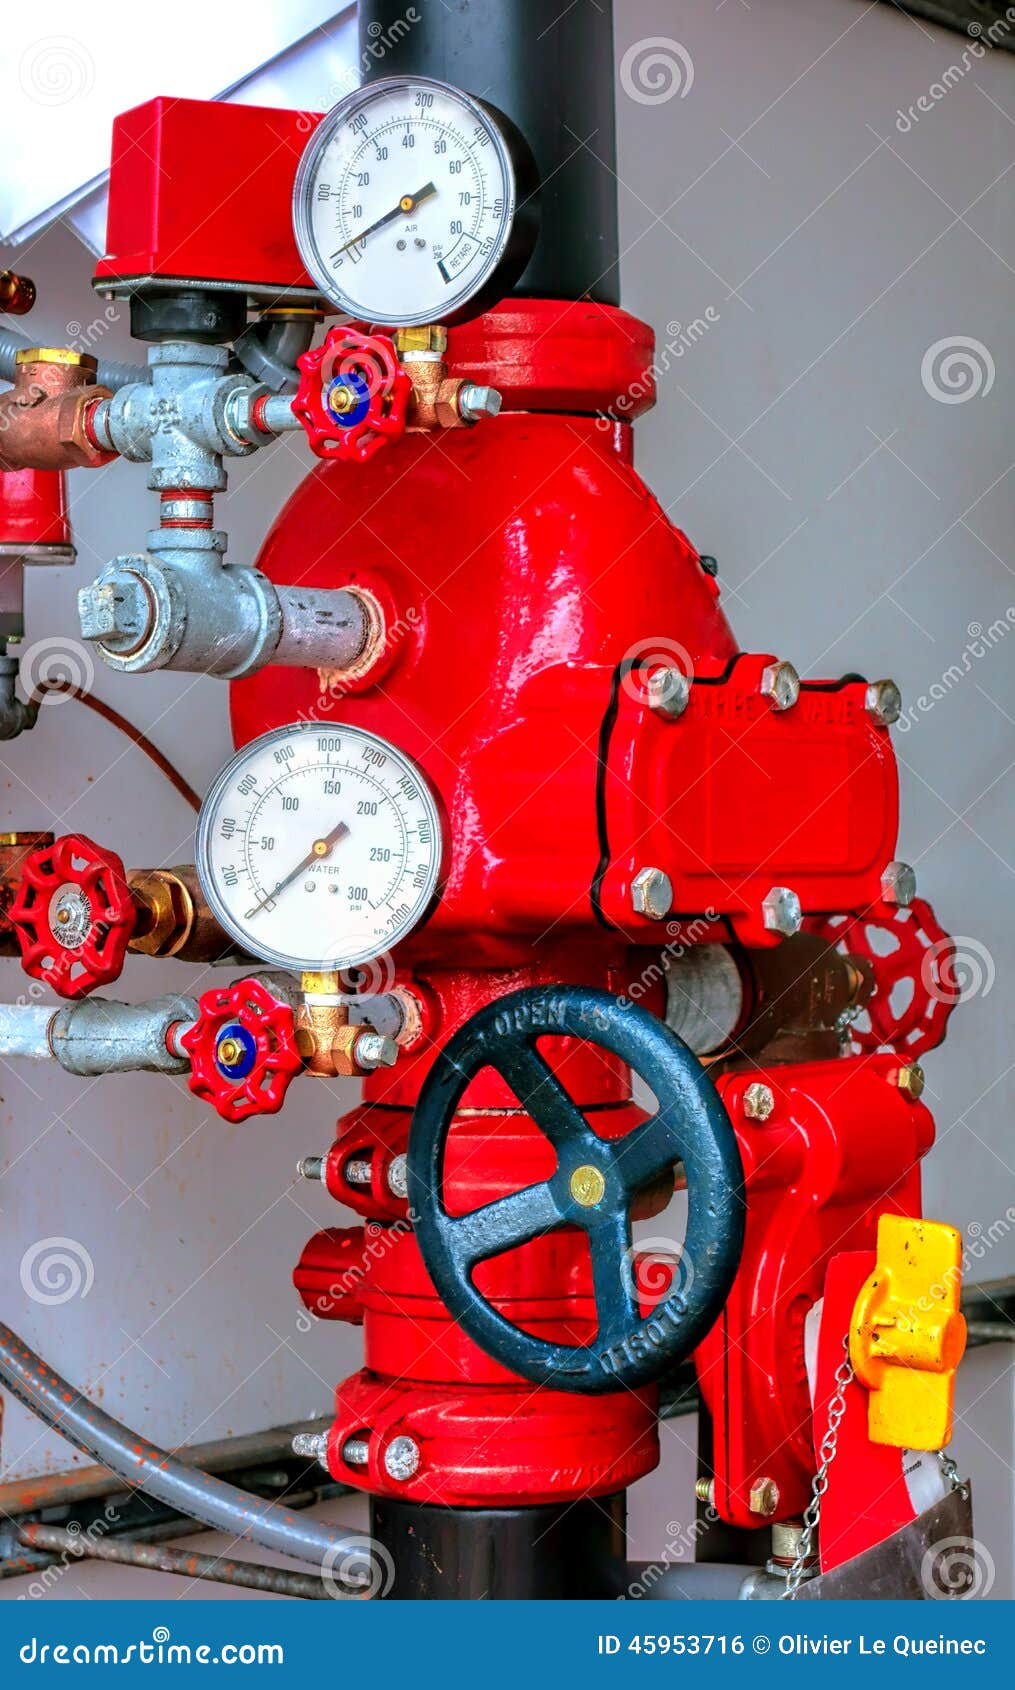 Geschwindigkeit Sanft Damm fire sprinkler control valve assembly ...